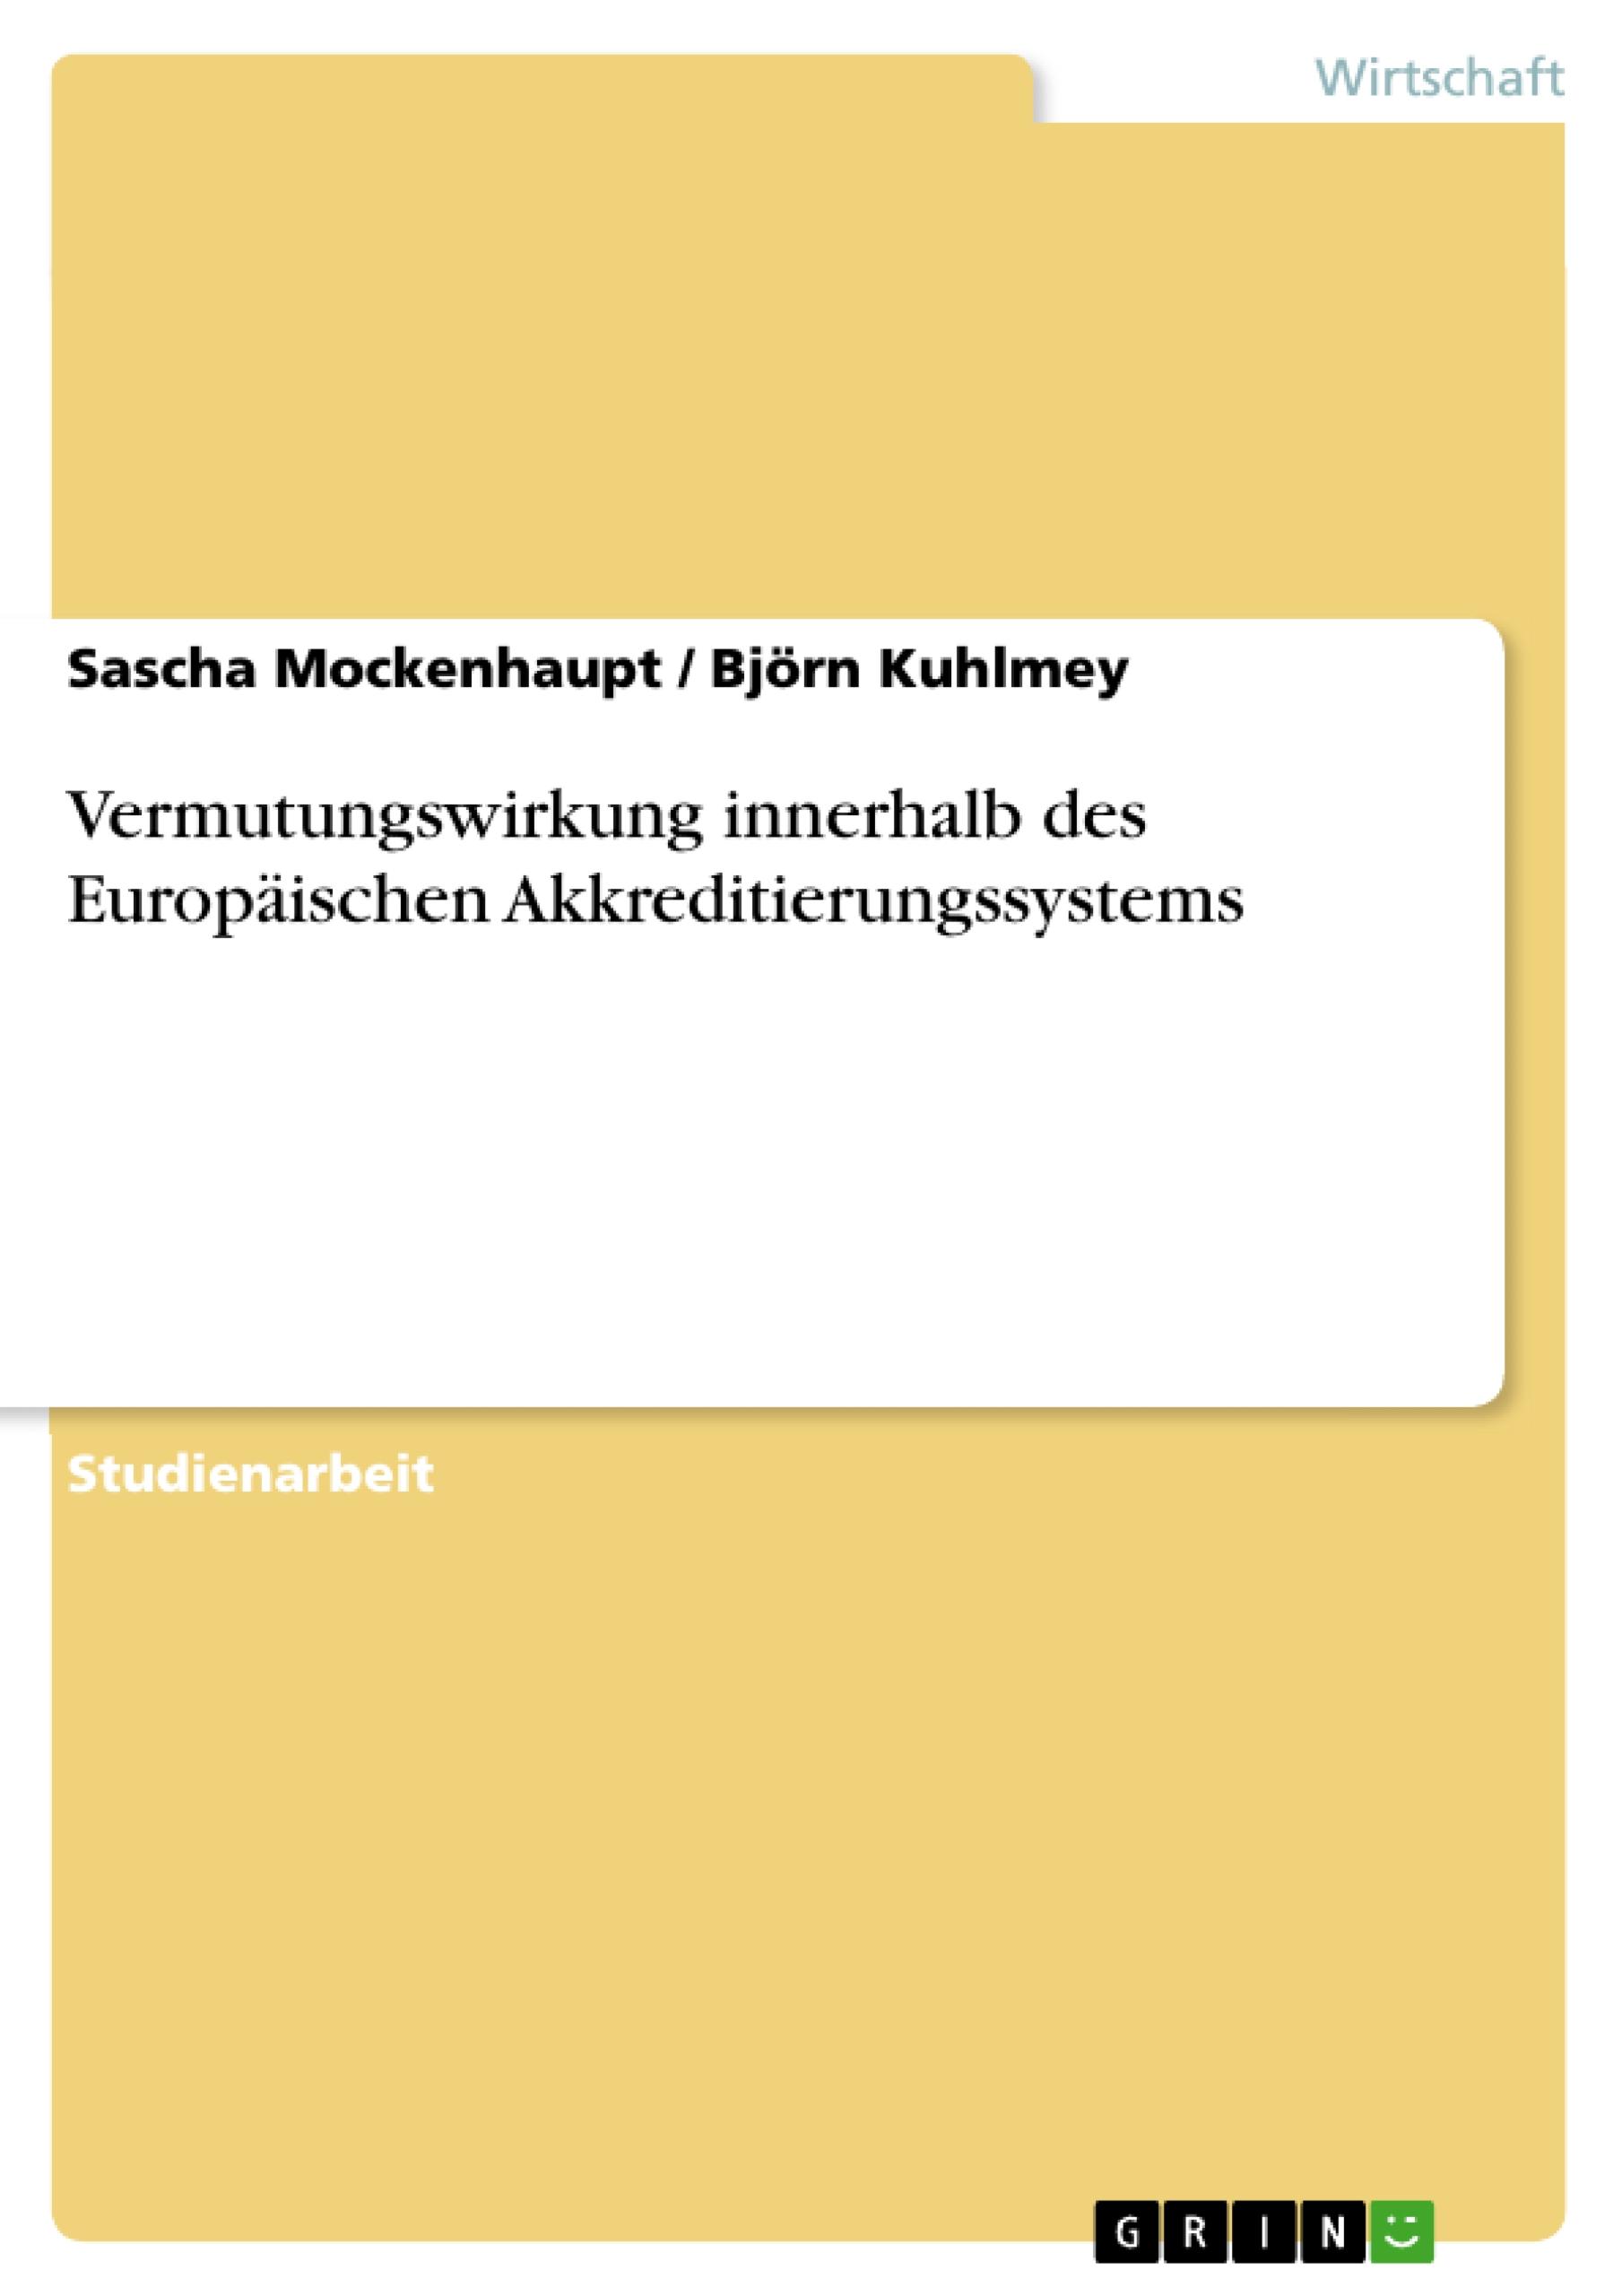 Vermutungswirkung innerhalb des Europaeischen Akkreditierungssystems - Kuhlmey, Bjoern Mockenhaupt, Sascha